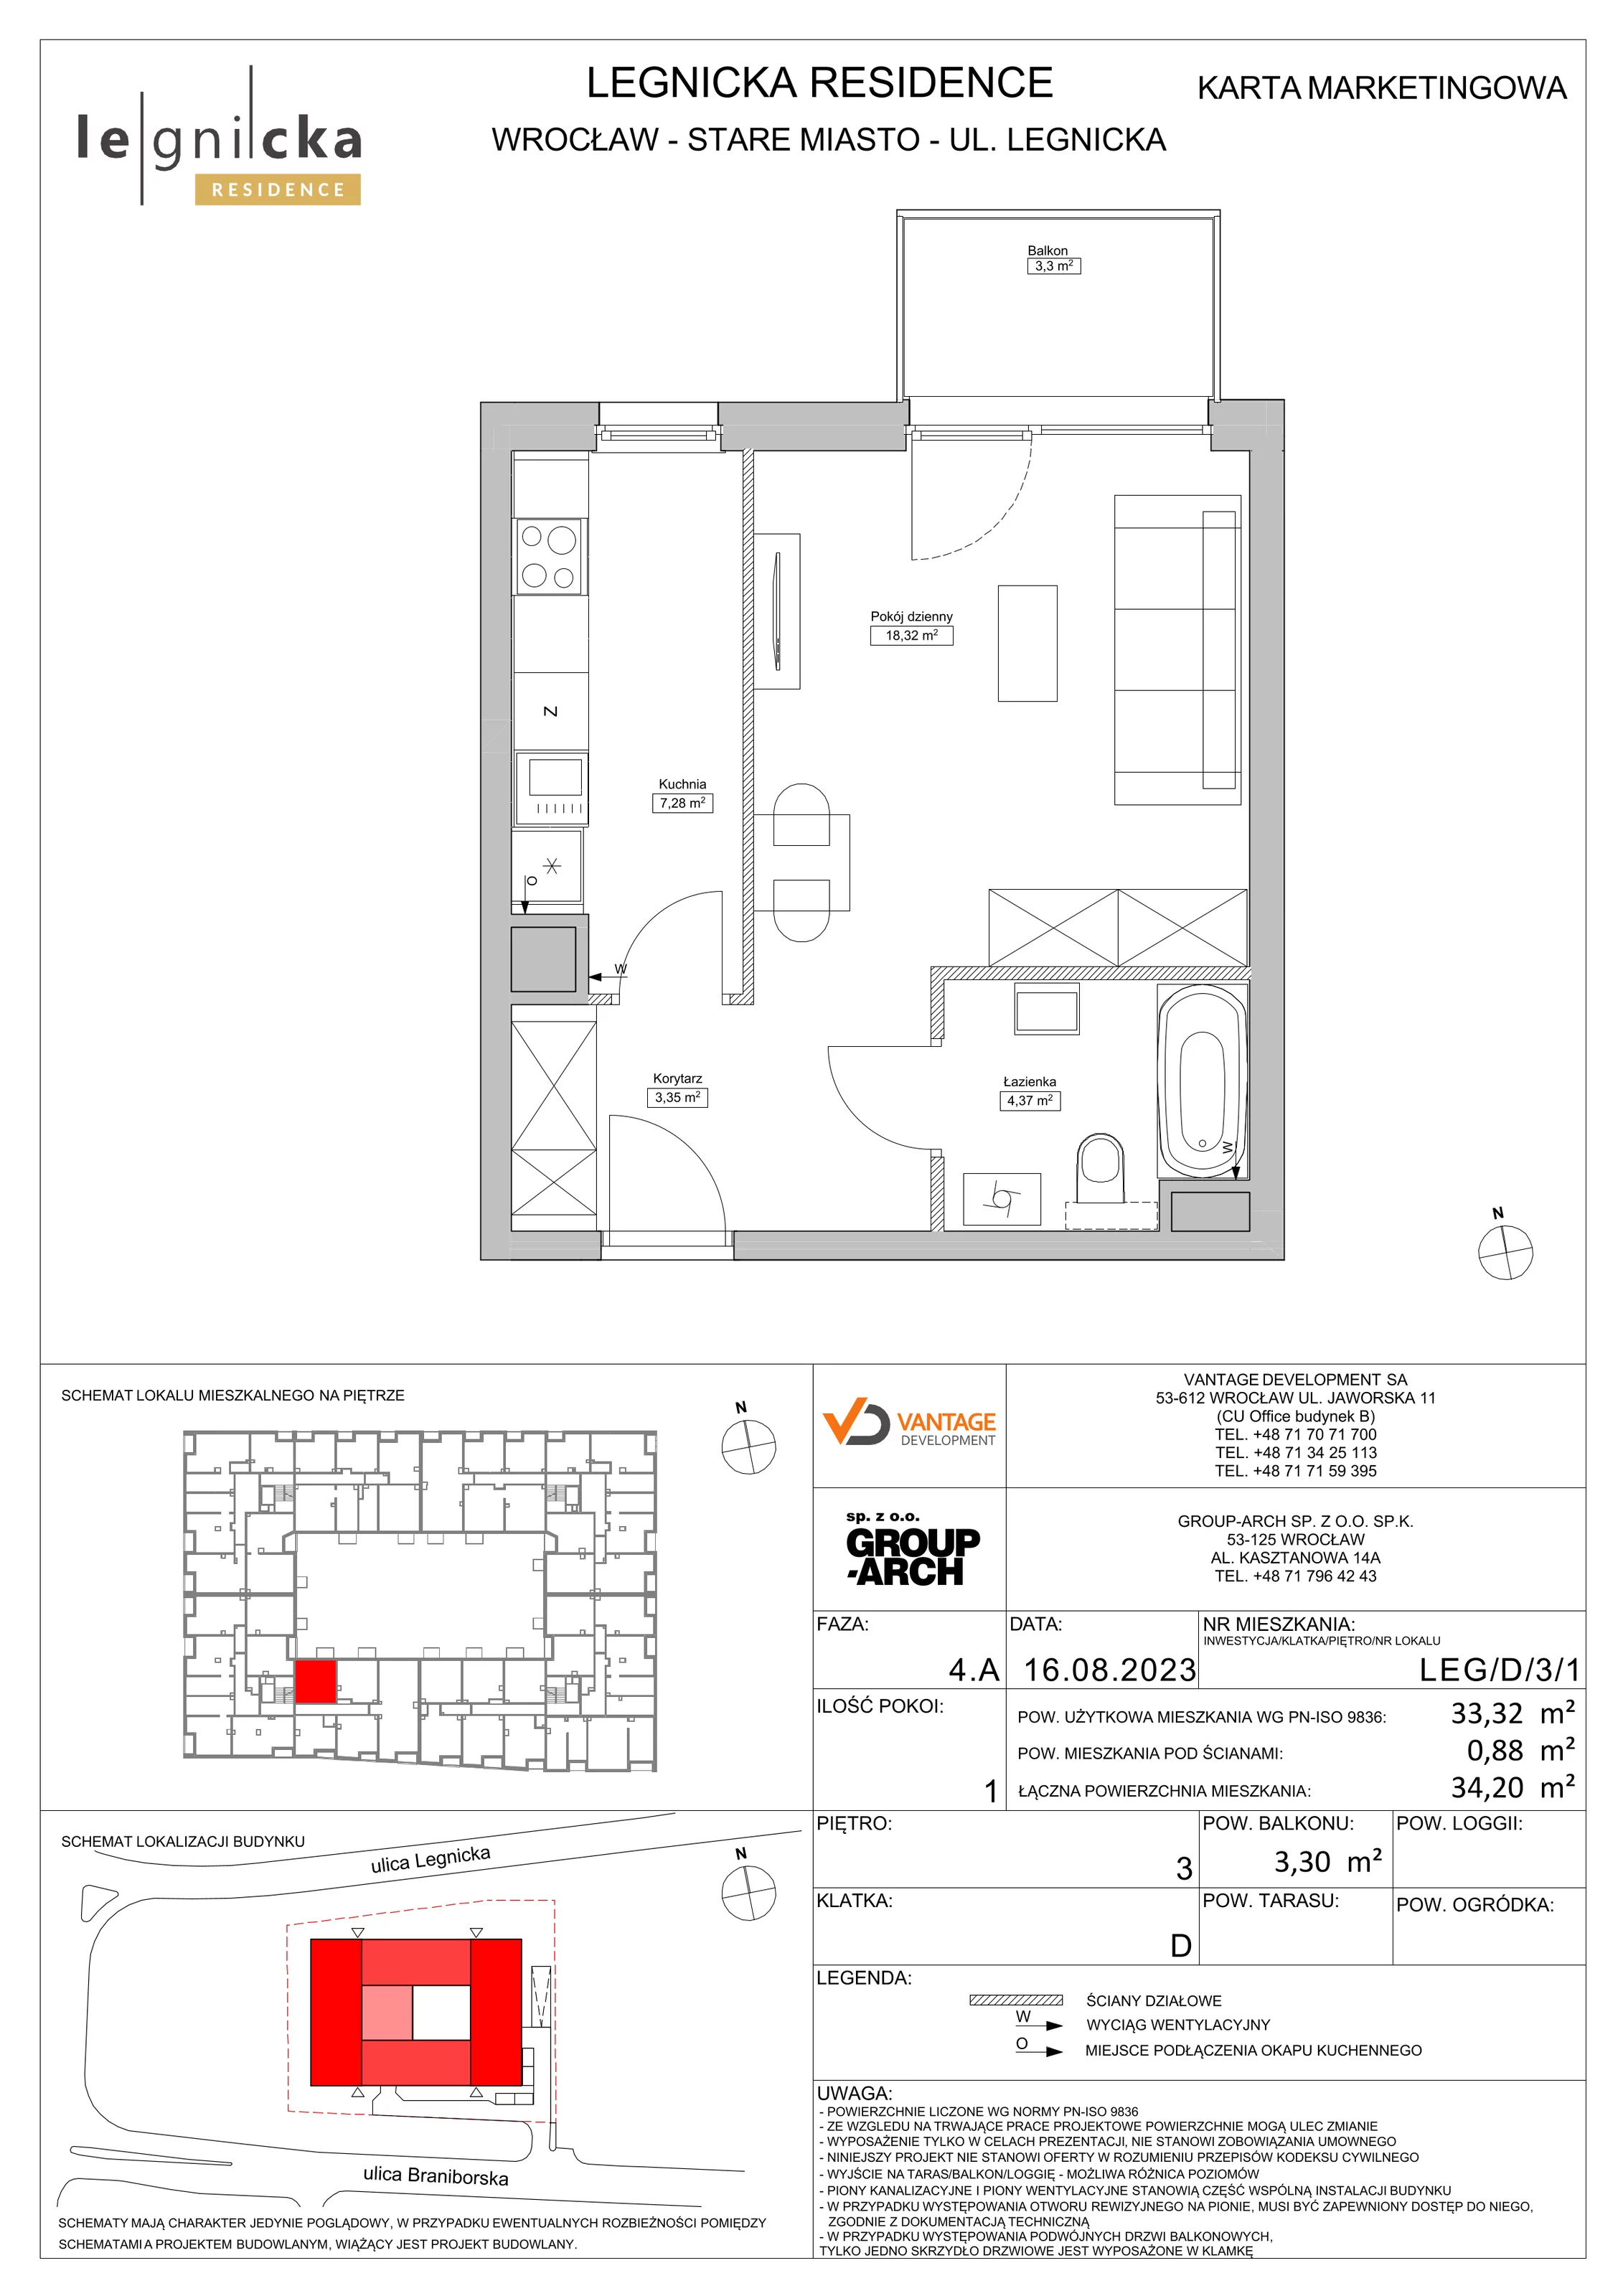 Apartament inwestycyjny 33,32 m², piętro 3, oferta nr LEG/D/3/1, Legnicka Residence, Wrocław, Szczepin, ul. Legnicka 36